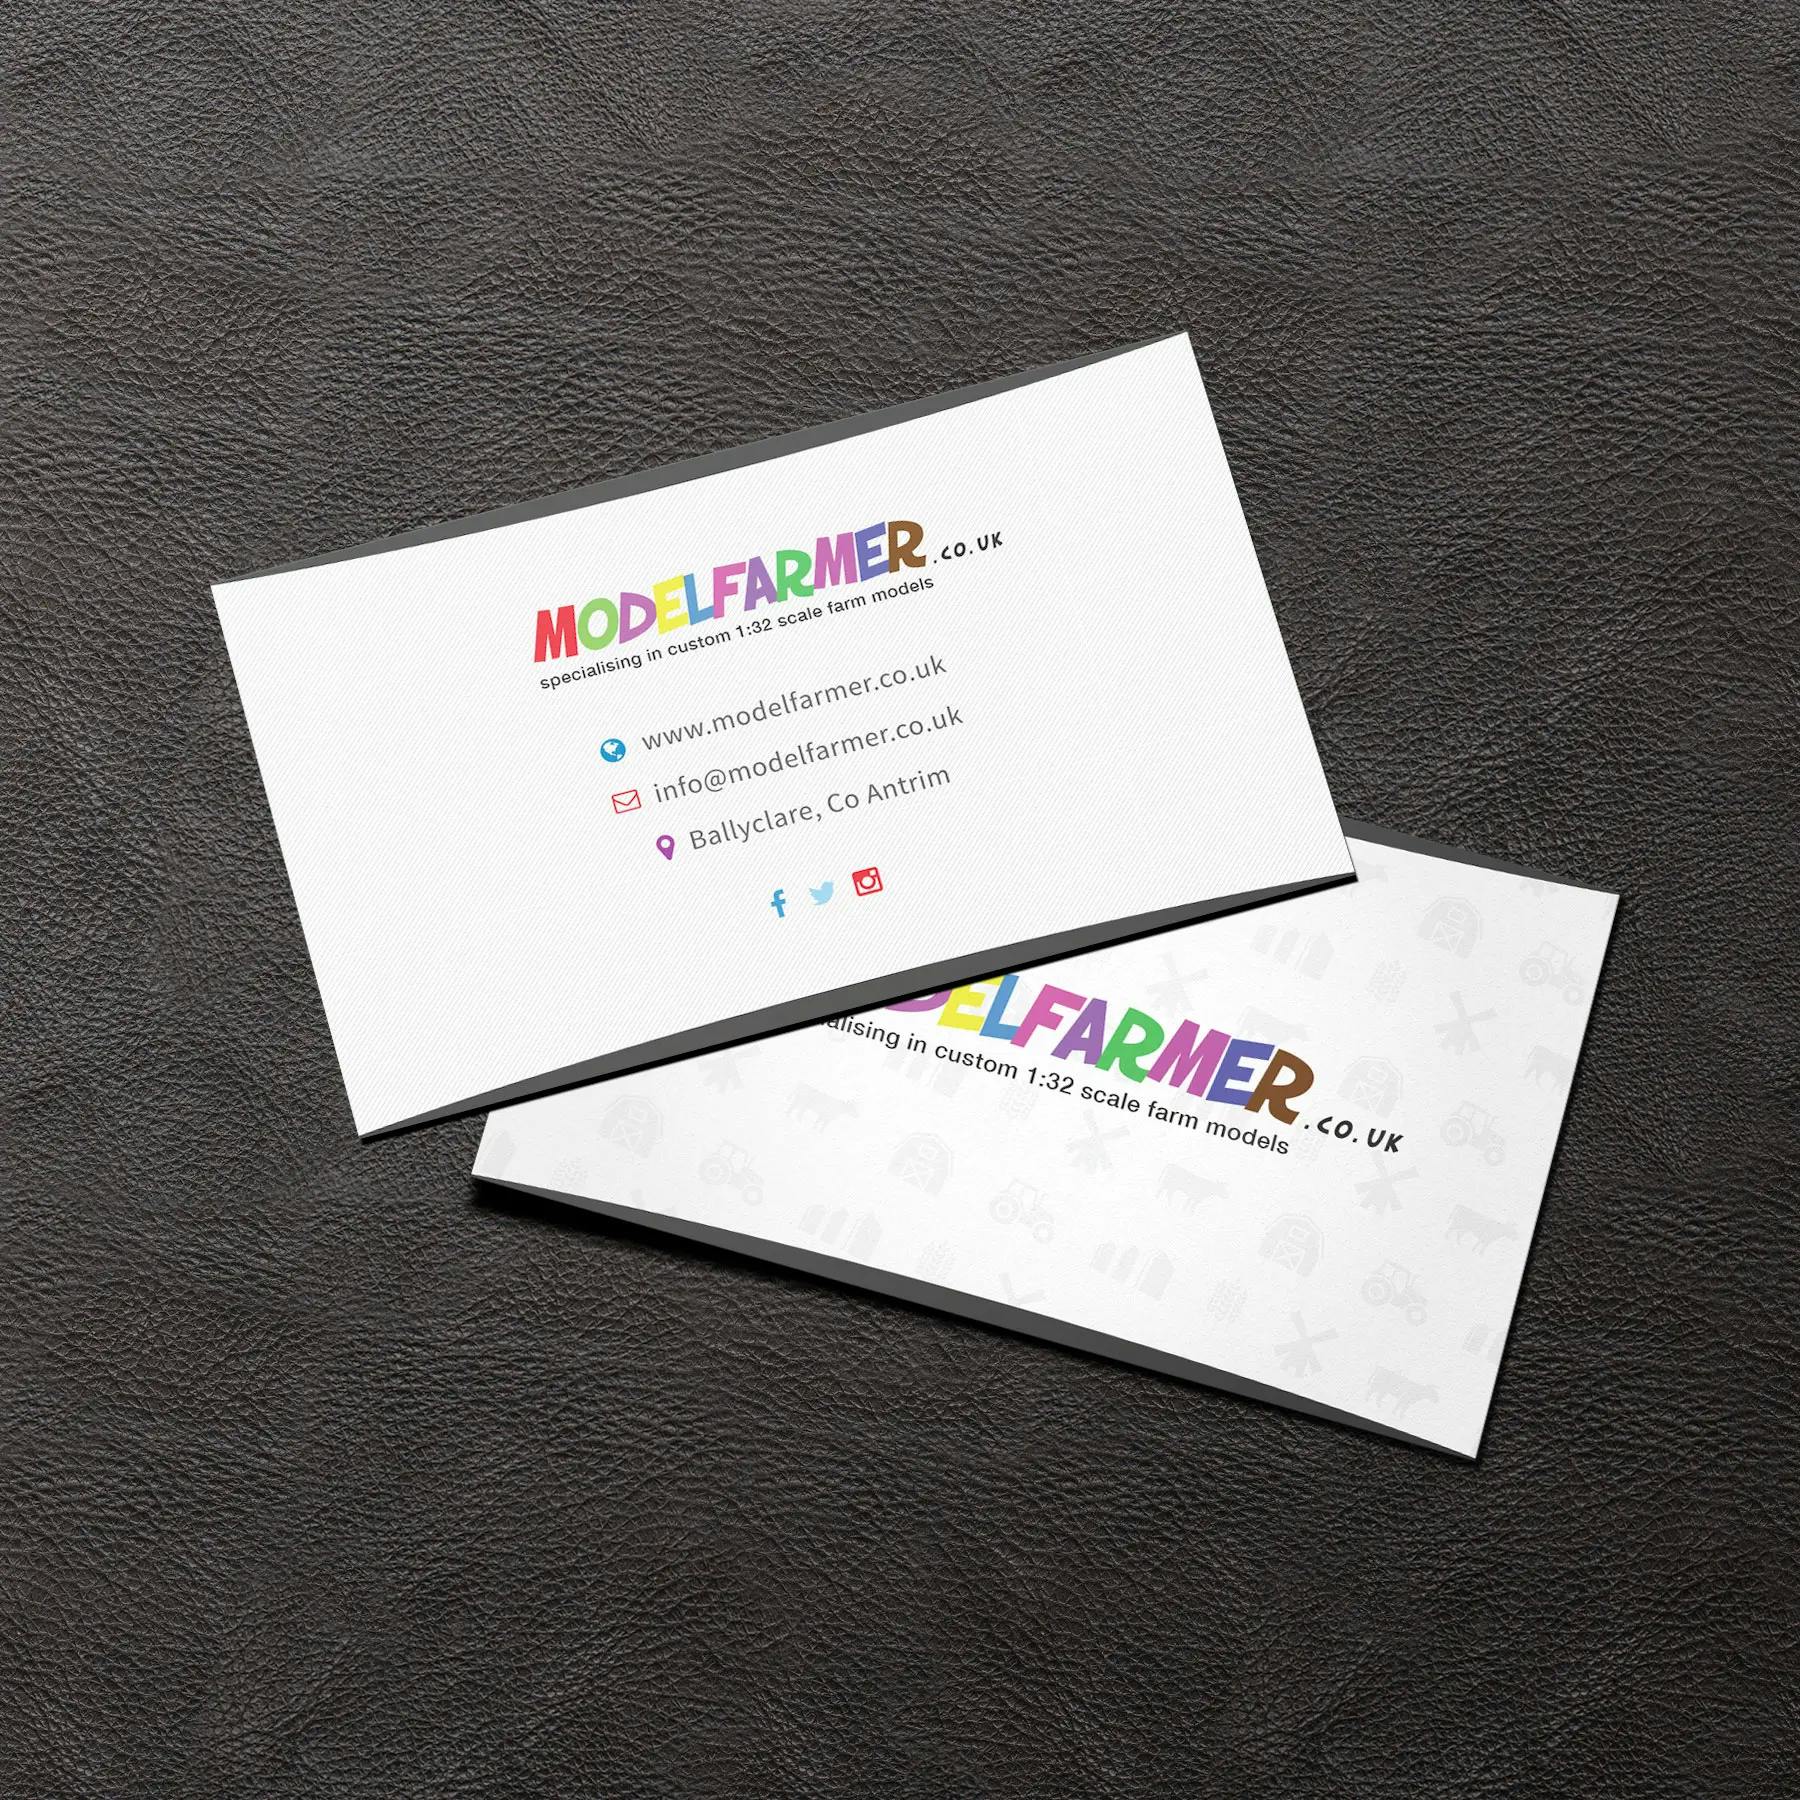 ModelFarmer.co.uk print design business card